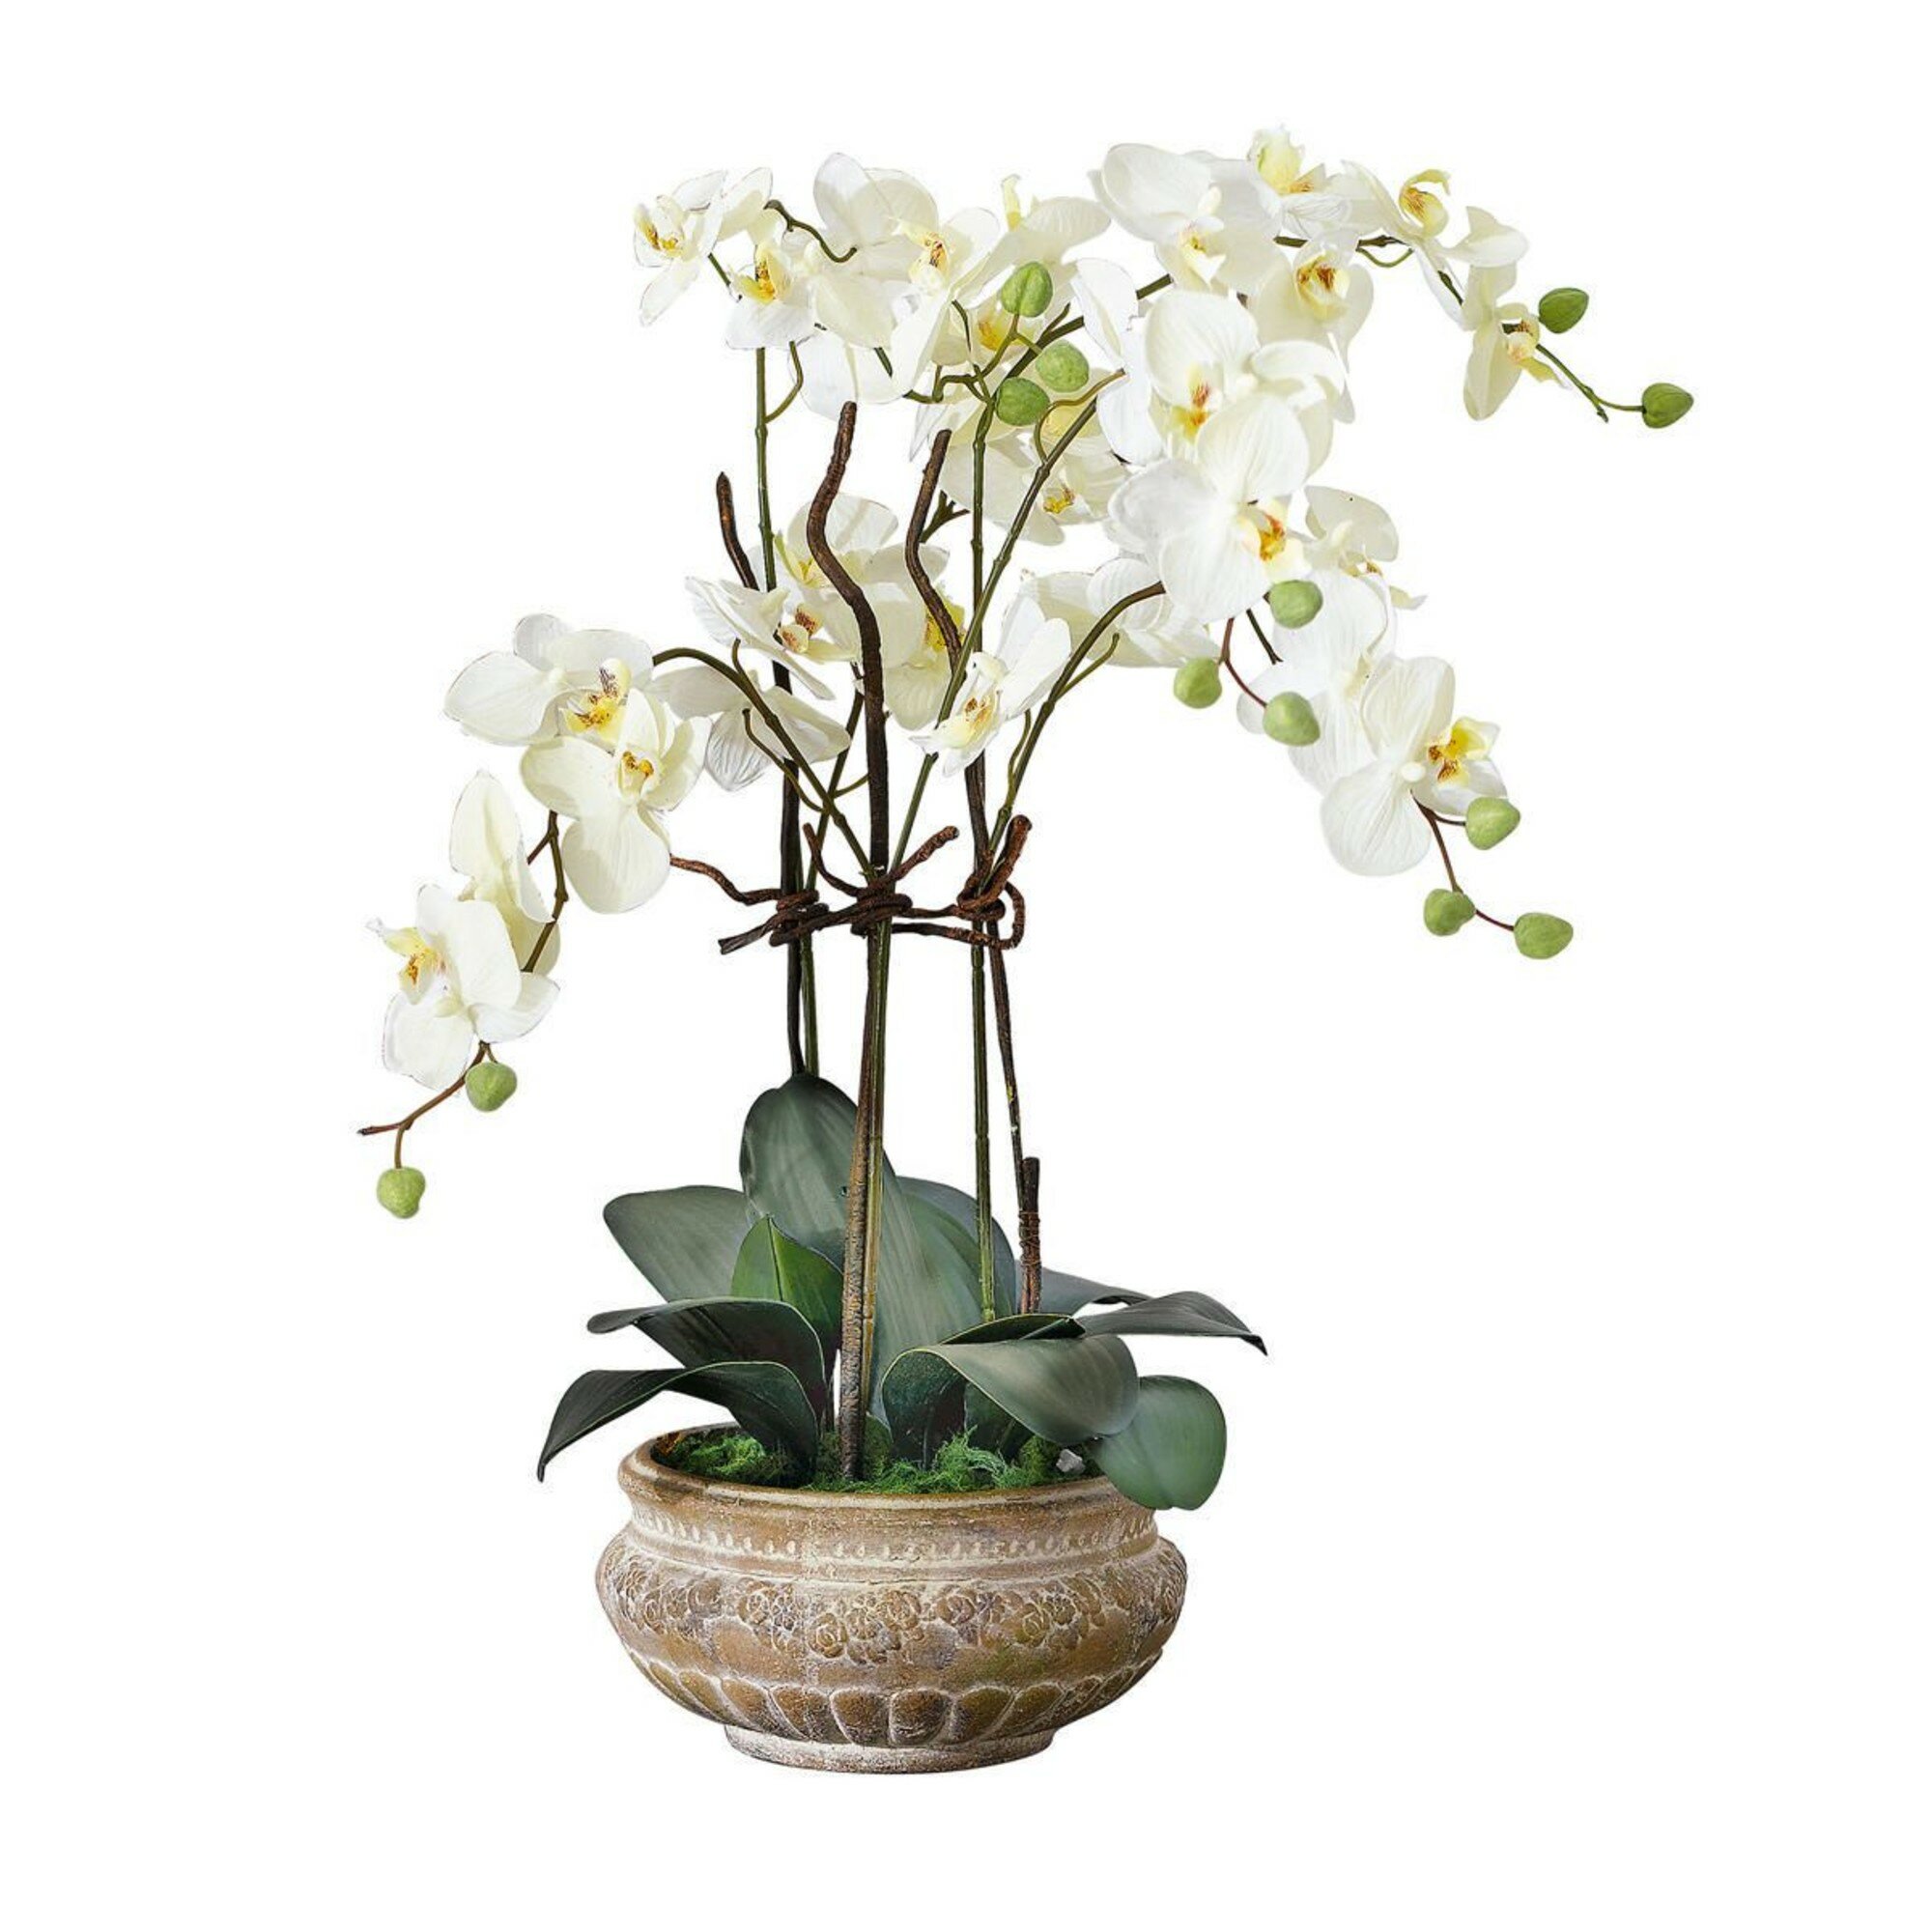 Купить цветы орхидеи в горшке. Фаленопсис Биг Стоун. Орхидея фаленопсис в горшке. Орхидея фаленопсис Silk.